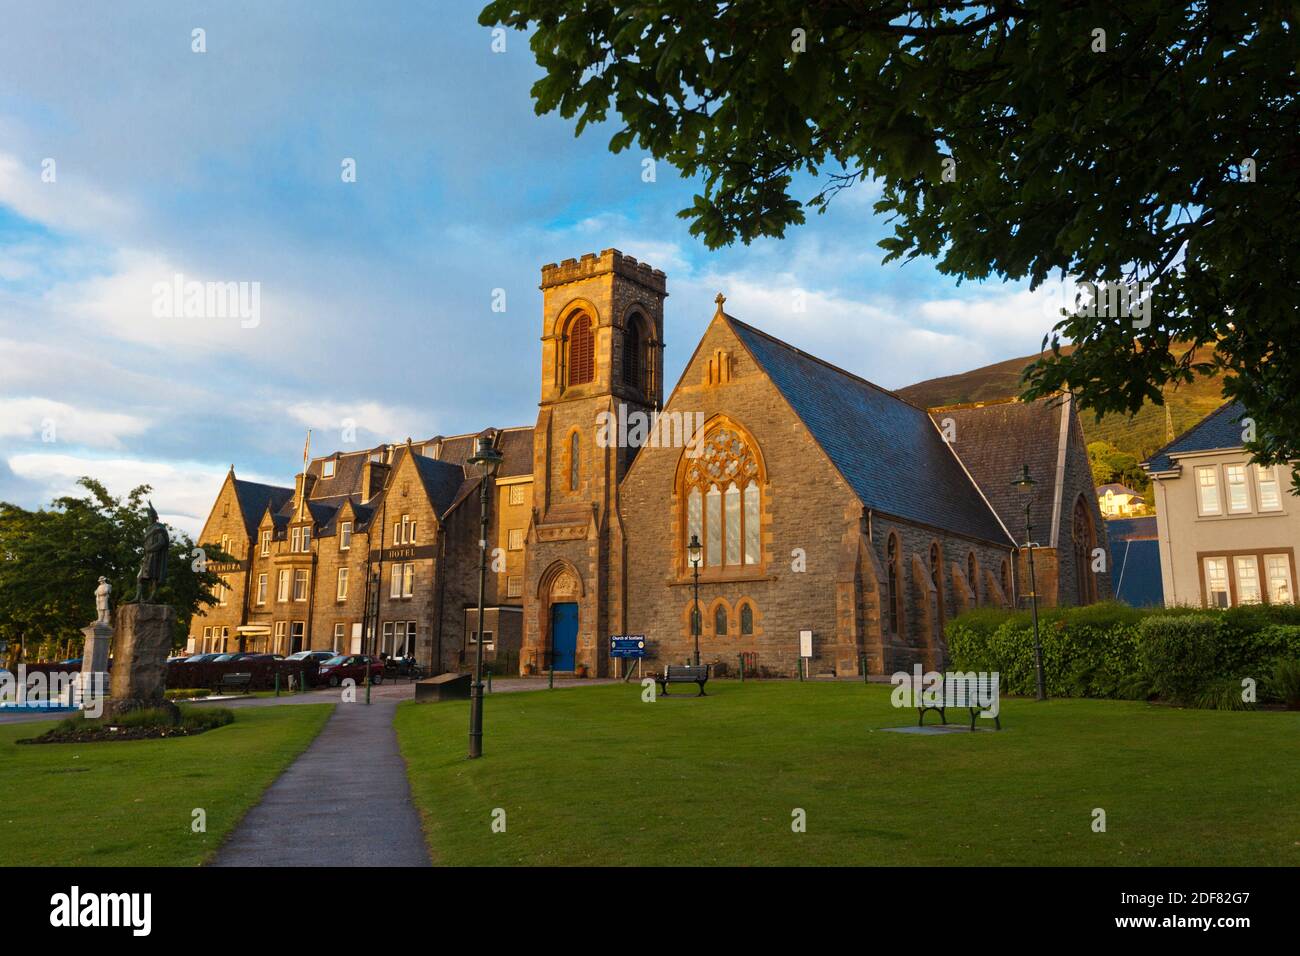 Église paroissiale de Duncansburgh Macintosh, The Parade, Town Park, fort William, Lochaber, Scottish Highlands, Écosse, Royaume-Uni, Europe. Banque D'Images